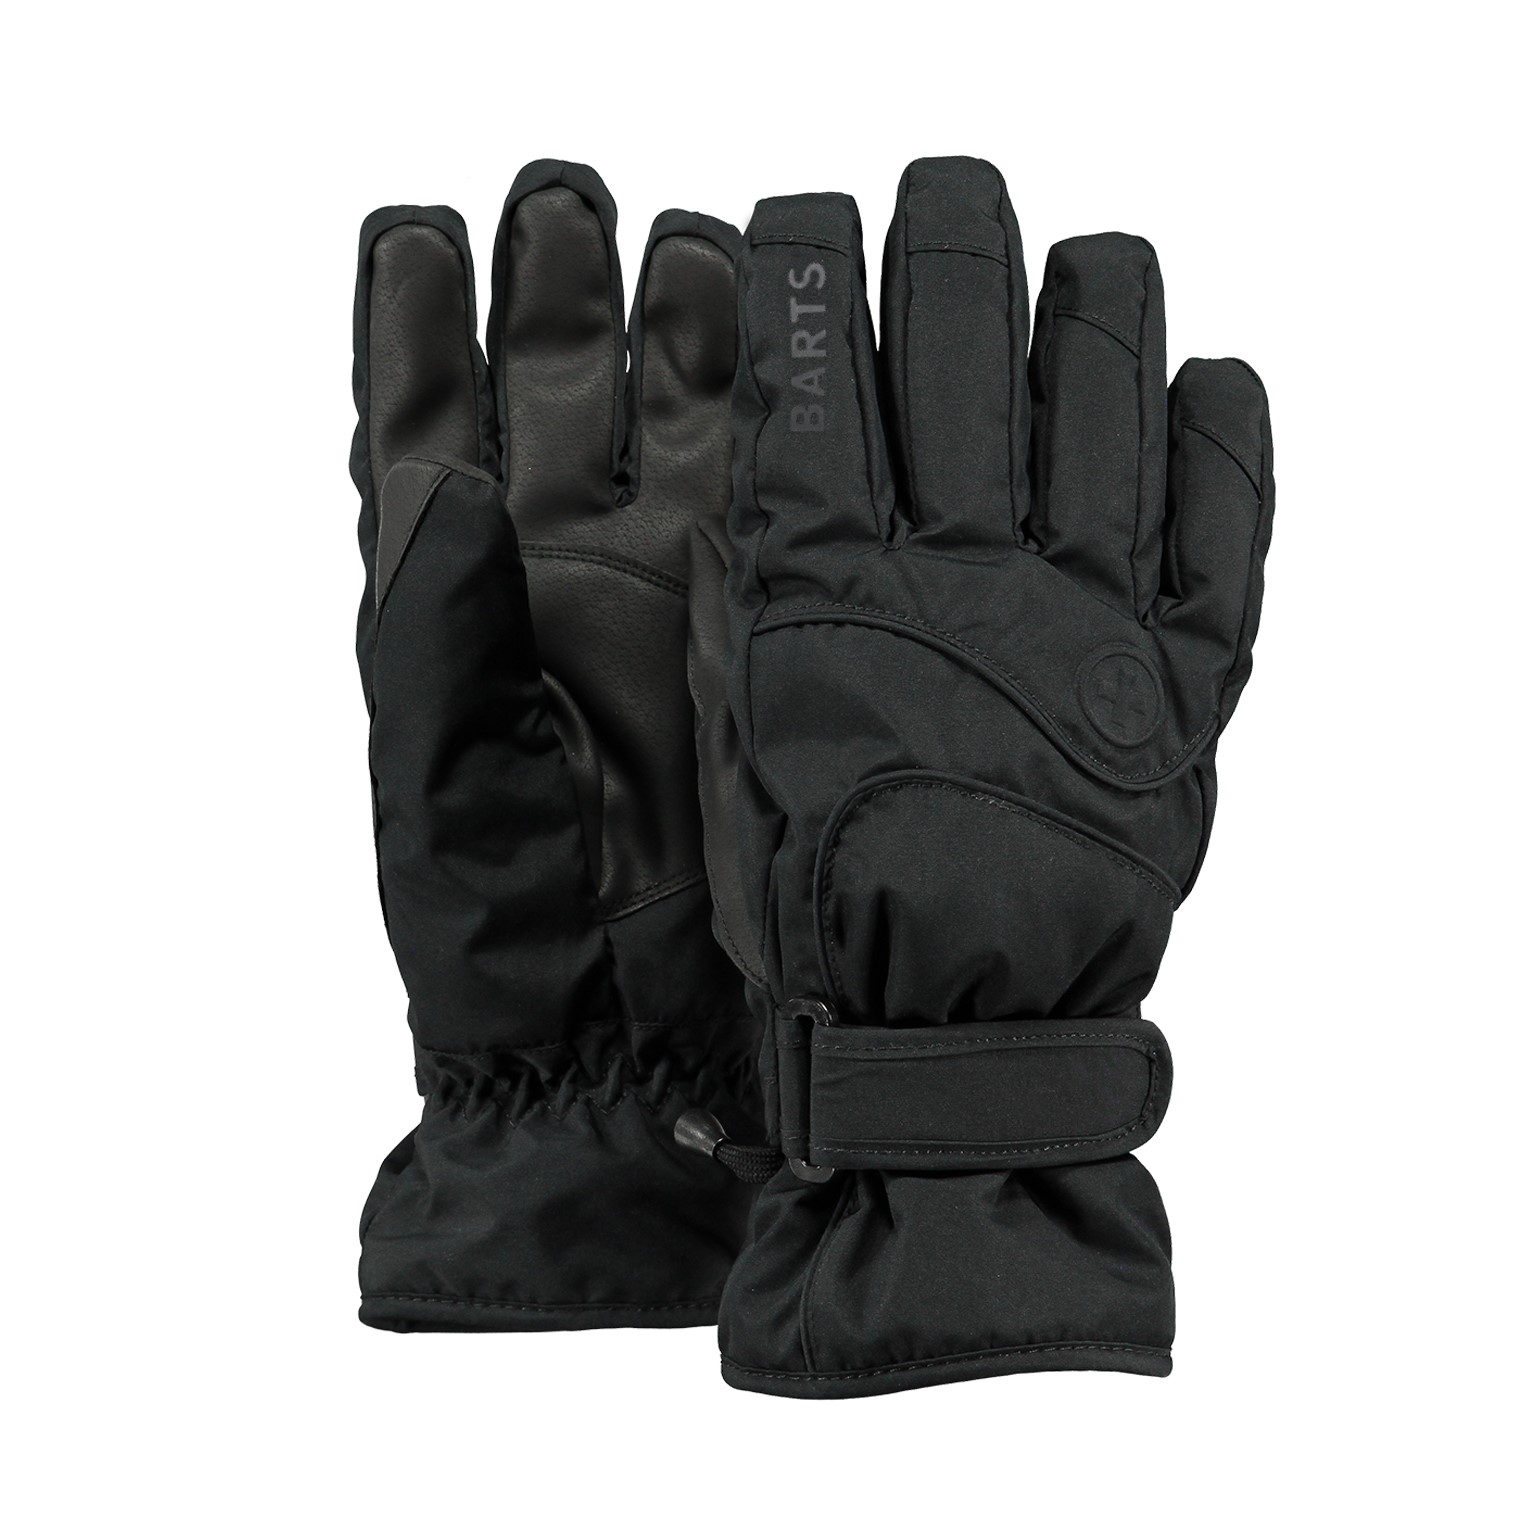 Accessoires Handschoenen & wanten Winterhandschoenen ZWART haarspelleer rayon gevoerd WINTER handschoenen voor heren 